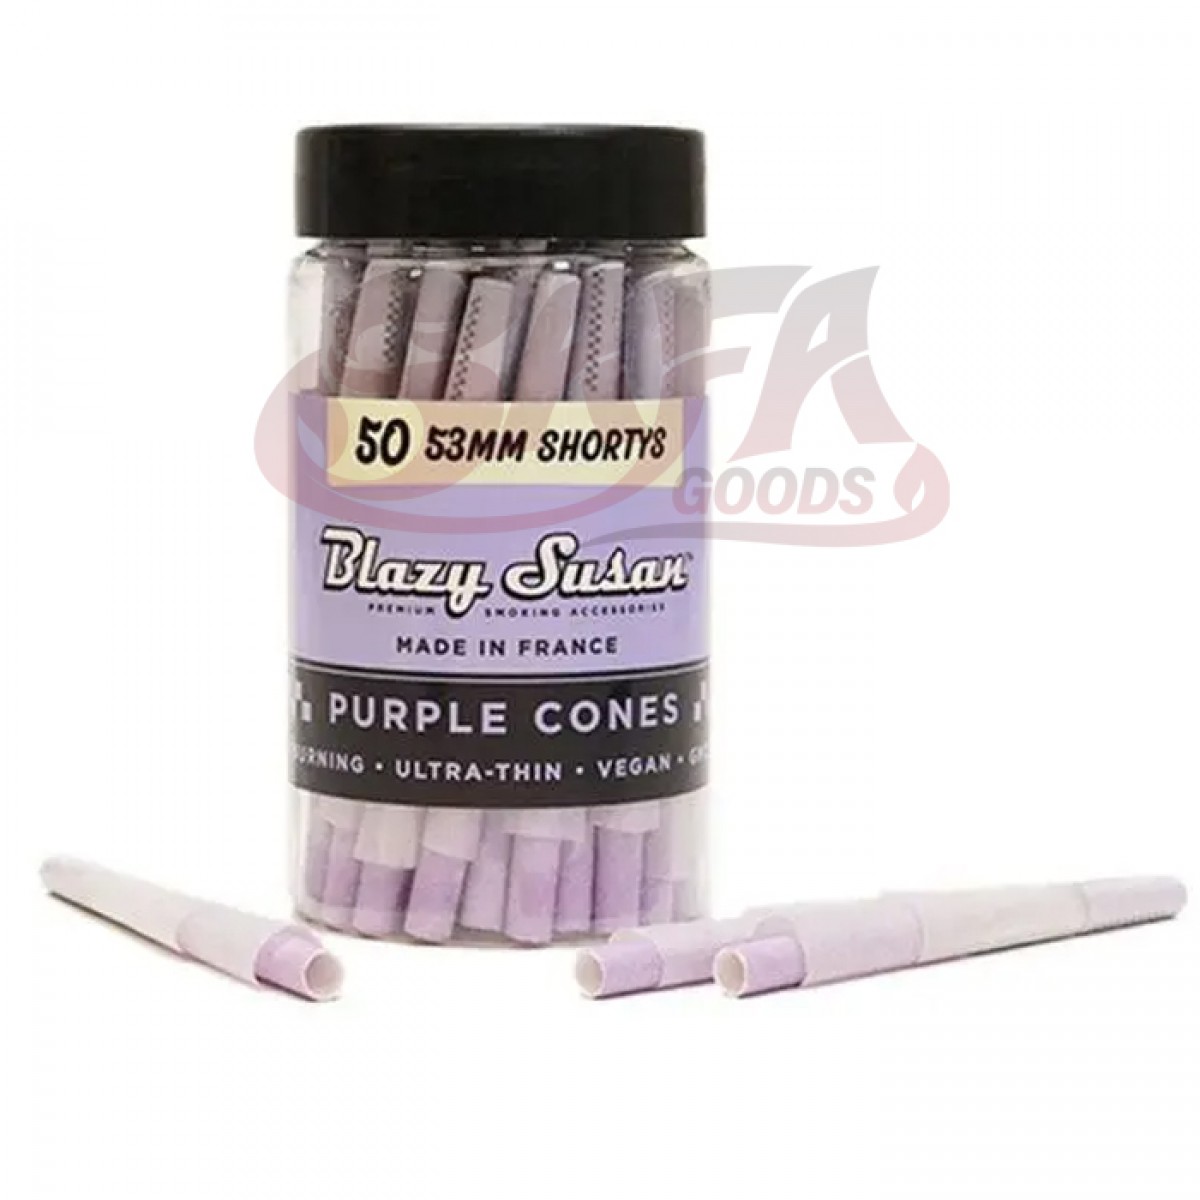 Blazy Susan - Purple Cones Shorty 53MM - 50CT Jar